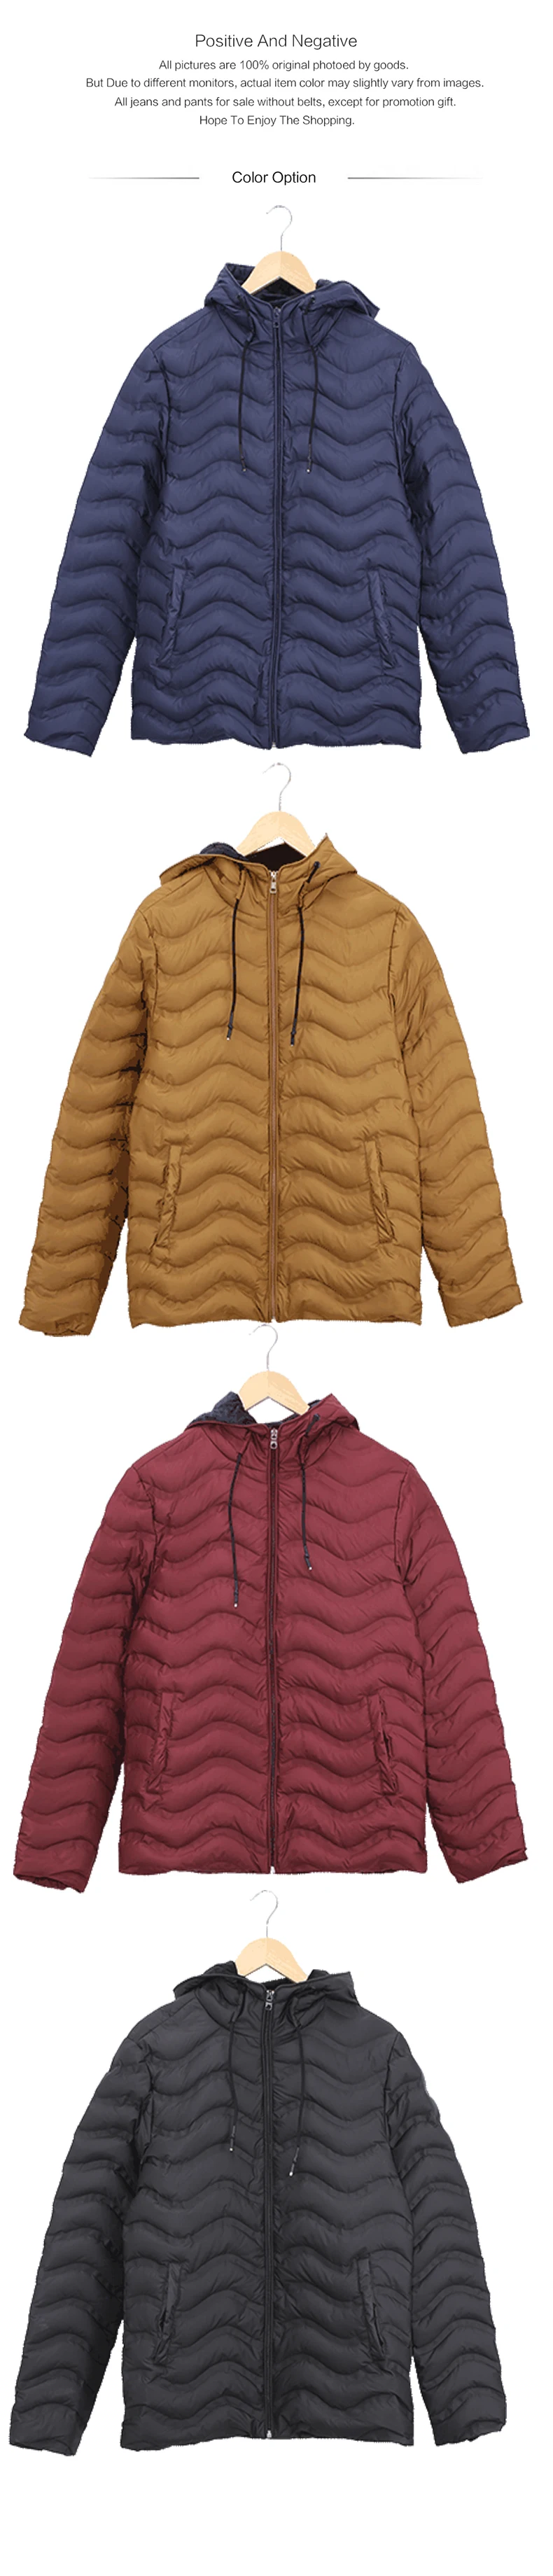 2019 Vomint зима Для мужчин вниз флис Толстовка пальто волны швейных 80% вниз теплые куртки, Цвет пальто Для мужчин Куртки P6WI9385